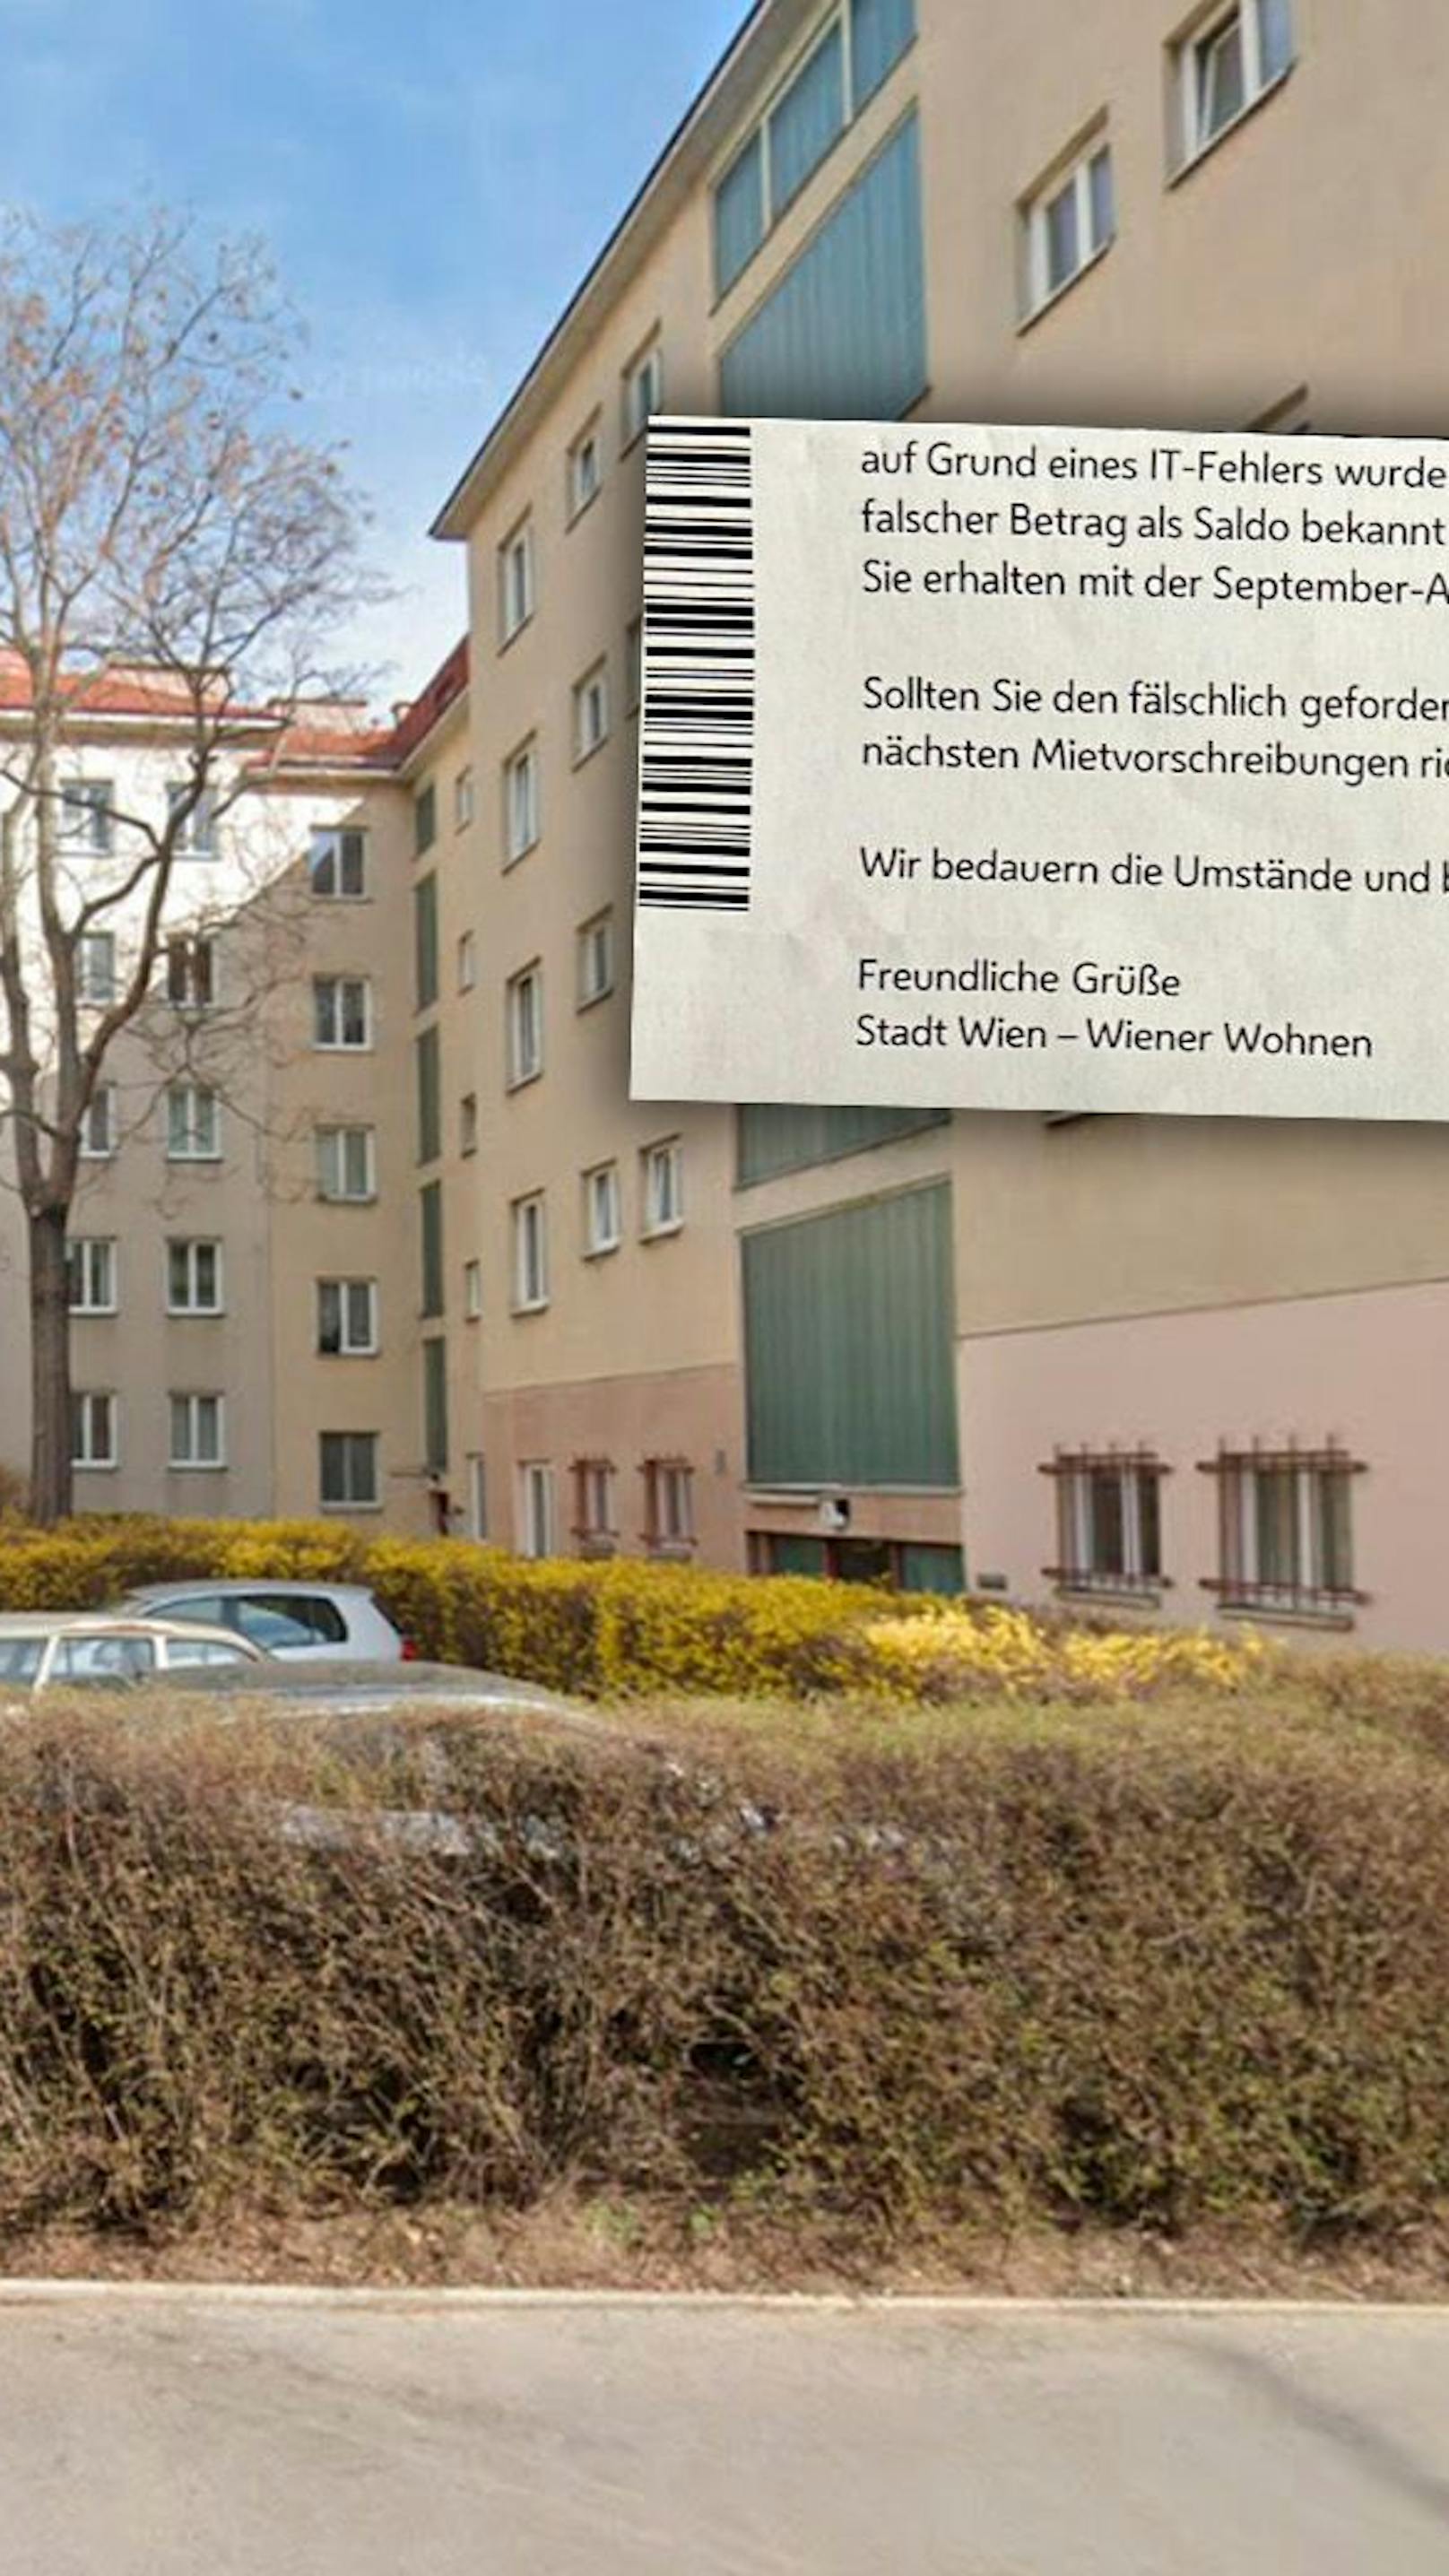 Riesige IT-Panne im Gemeindebau lässt Wiener zittern